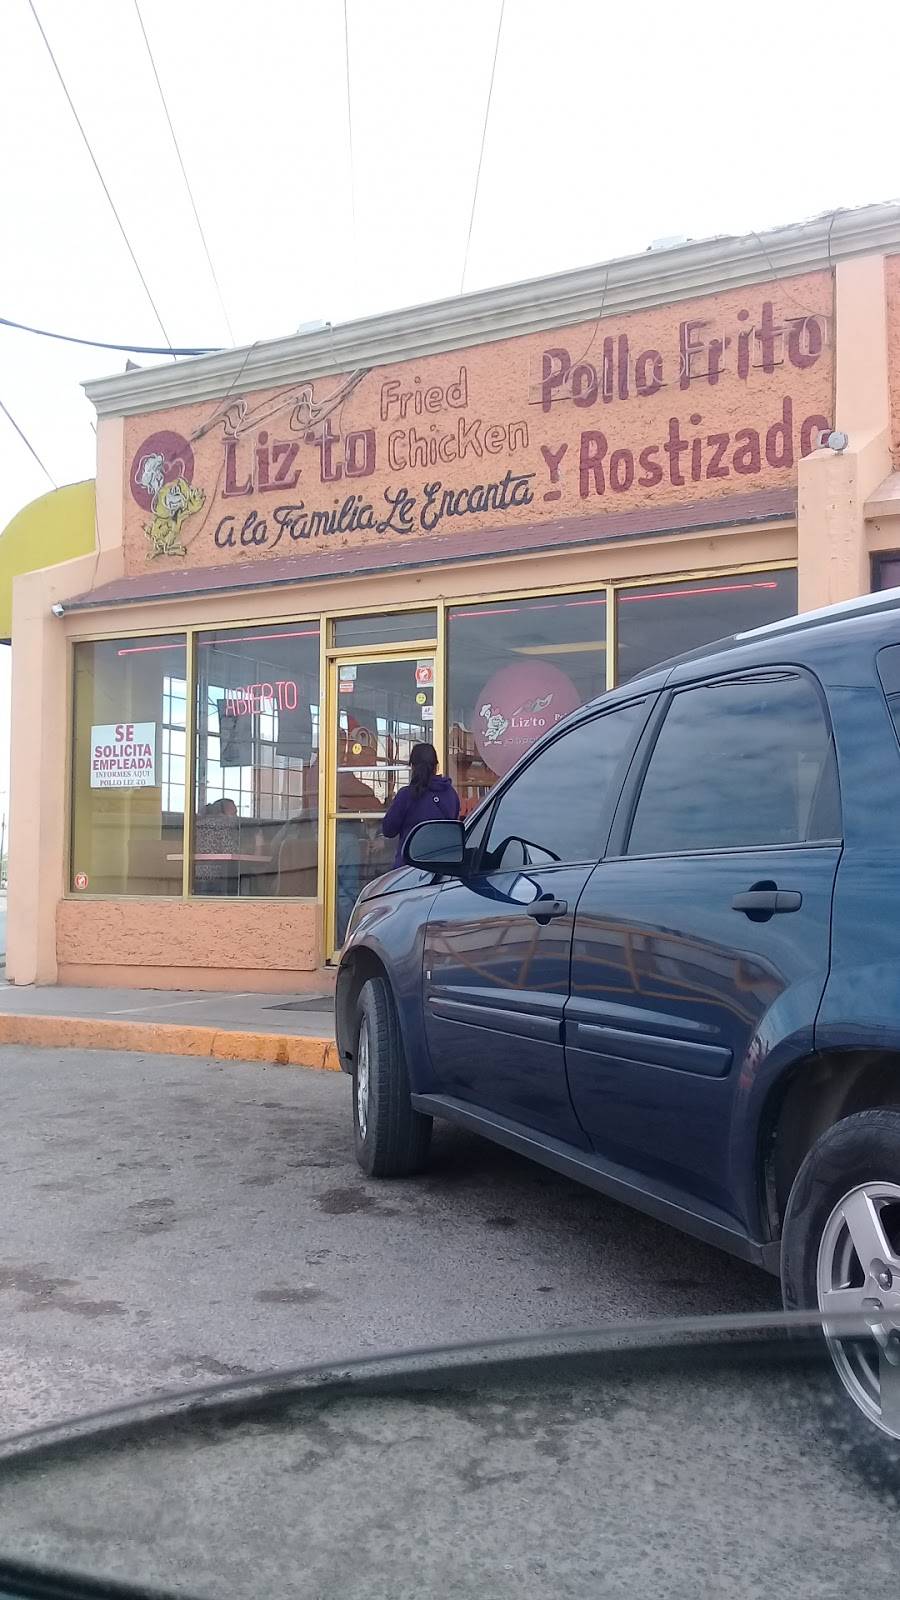 Pollo Frito Liz-to | Blvd. Manuel Gómez Morín, Crucero, Cd Juárez, Chih., Mexico | Phone: 656 214 4497